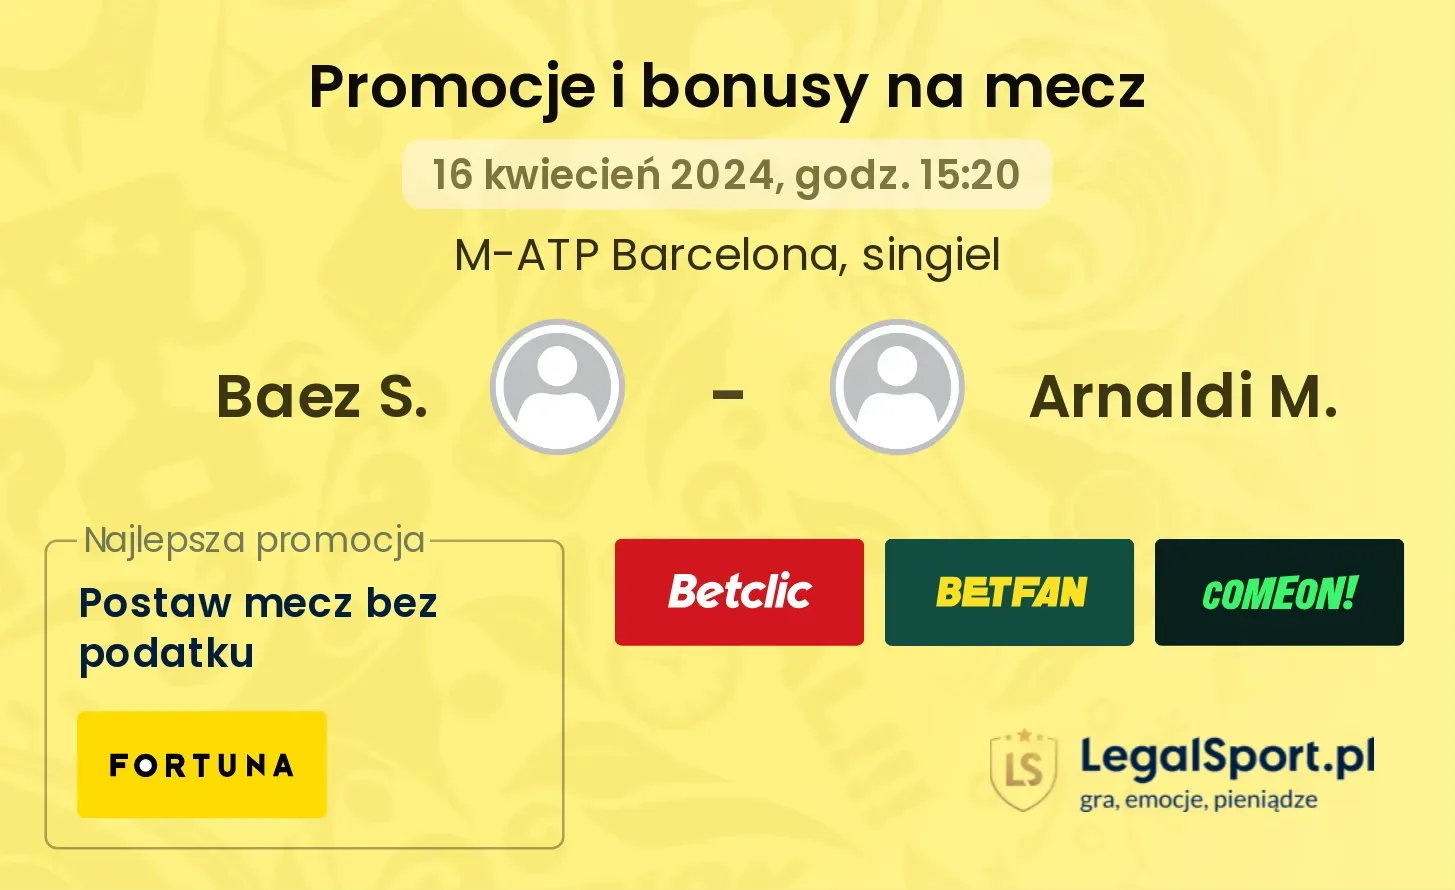 Baez S. - Arnaldi M. promocje bonusy na mecz